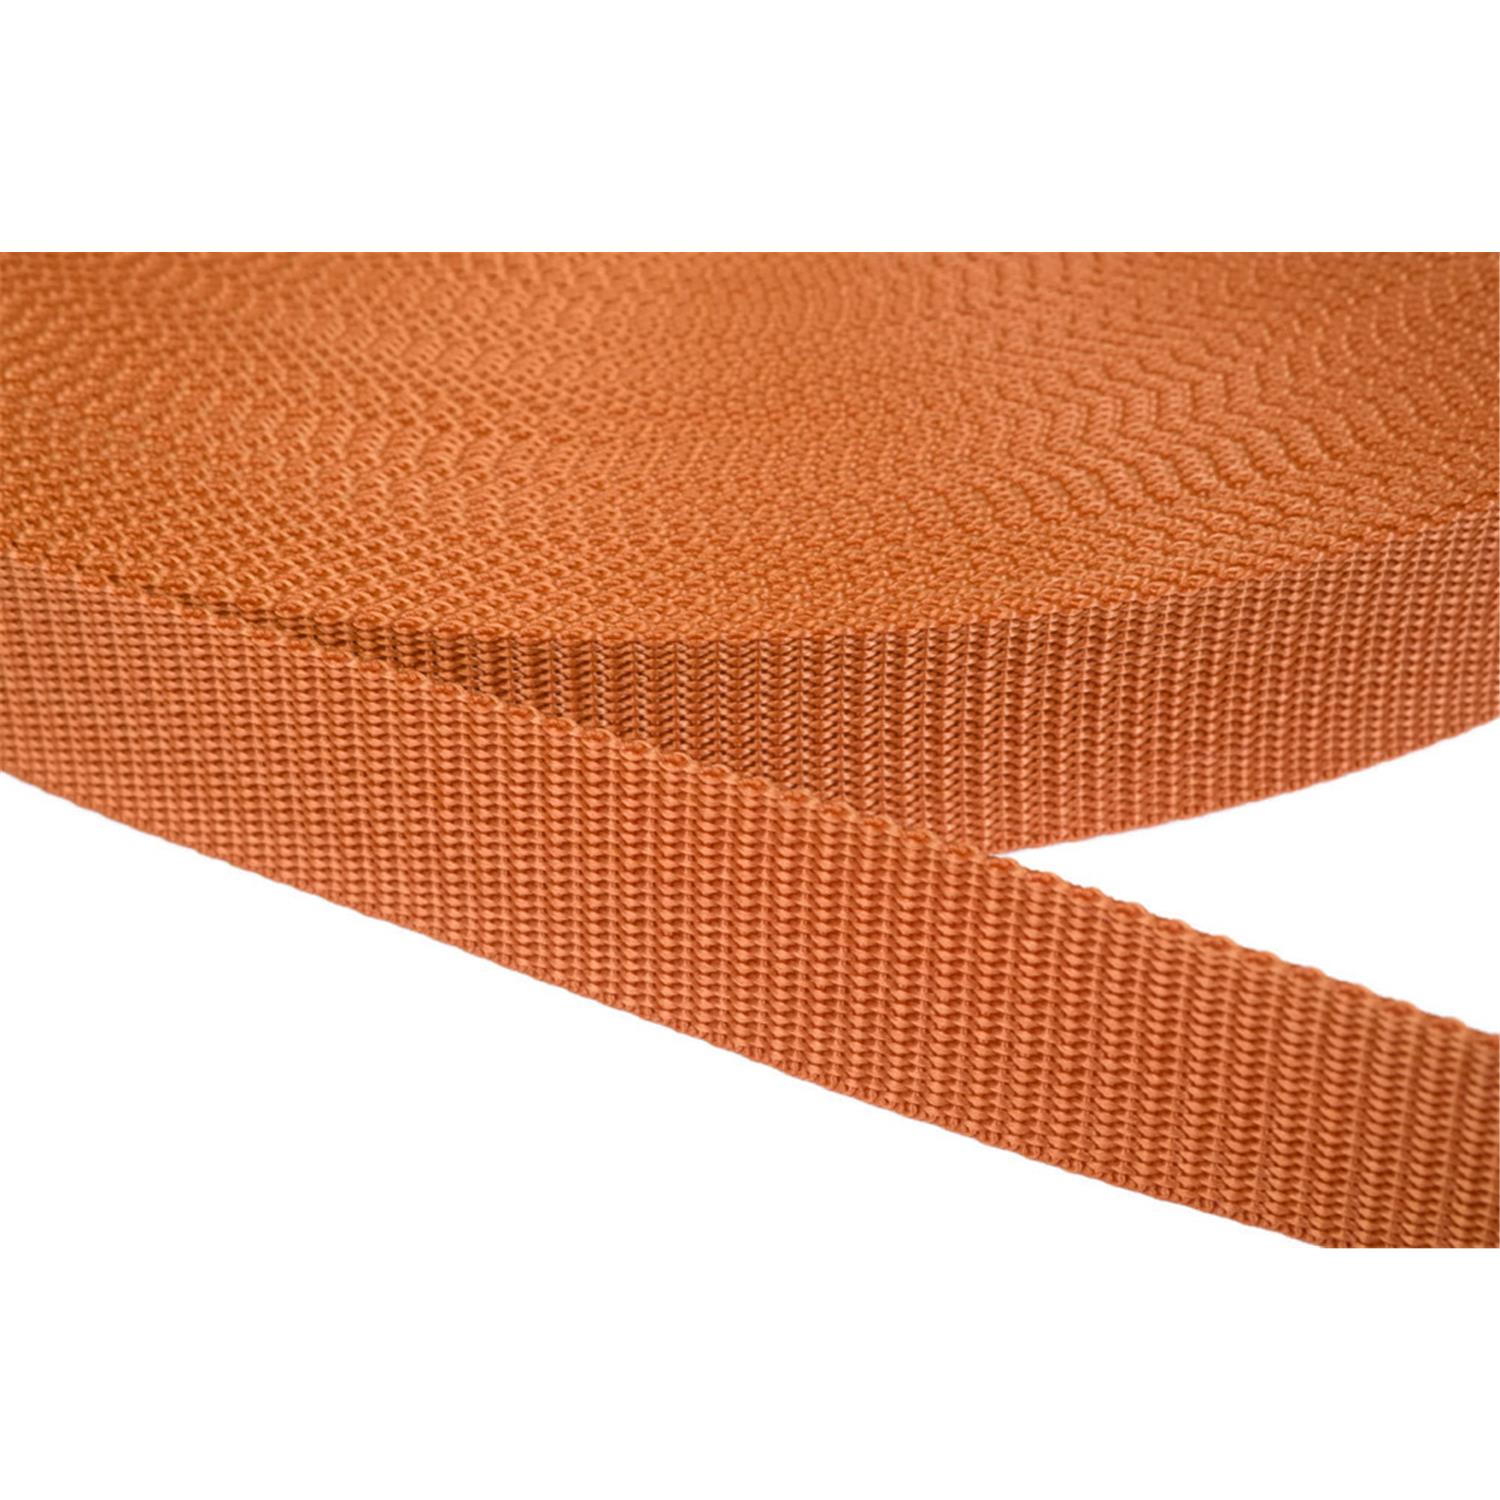 Gurtband 10mm breit aus Polypropylen in 41 Farben 05 - ockerbraun 12 Meter